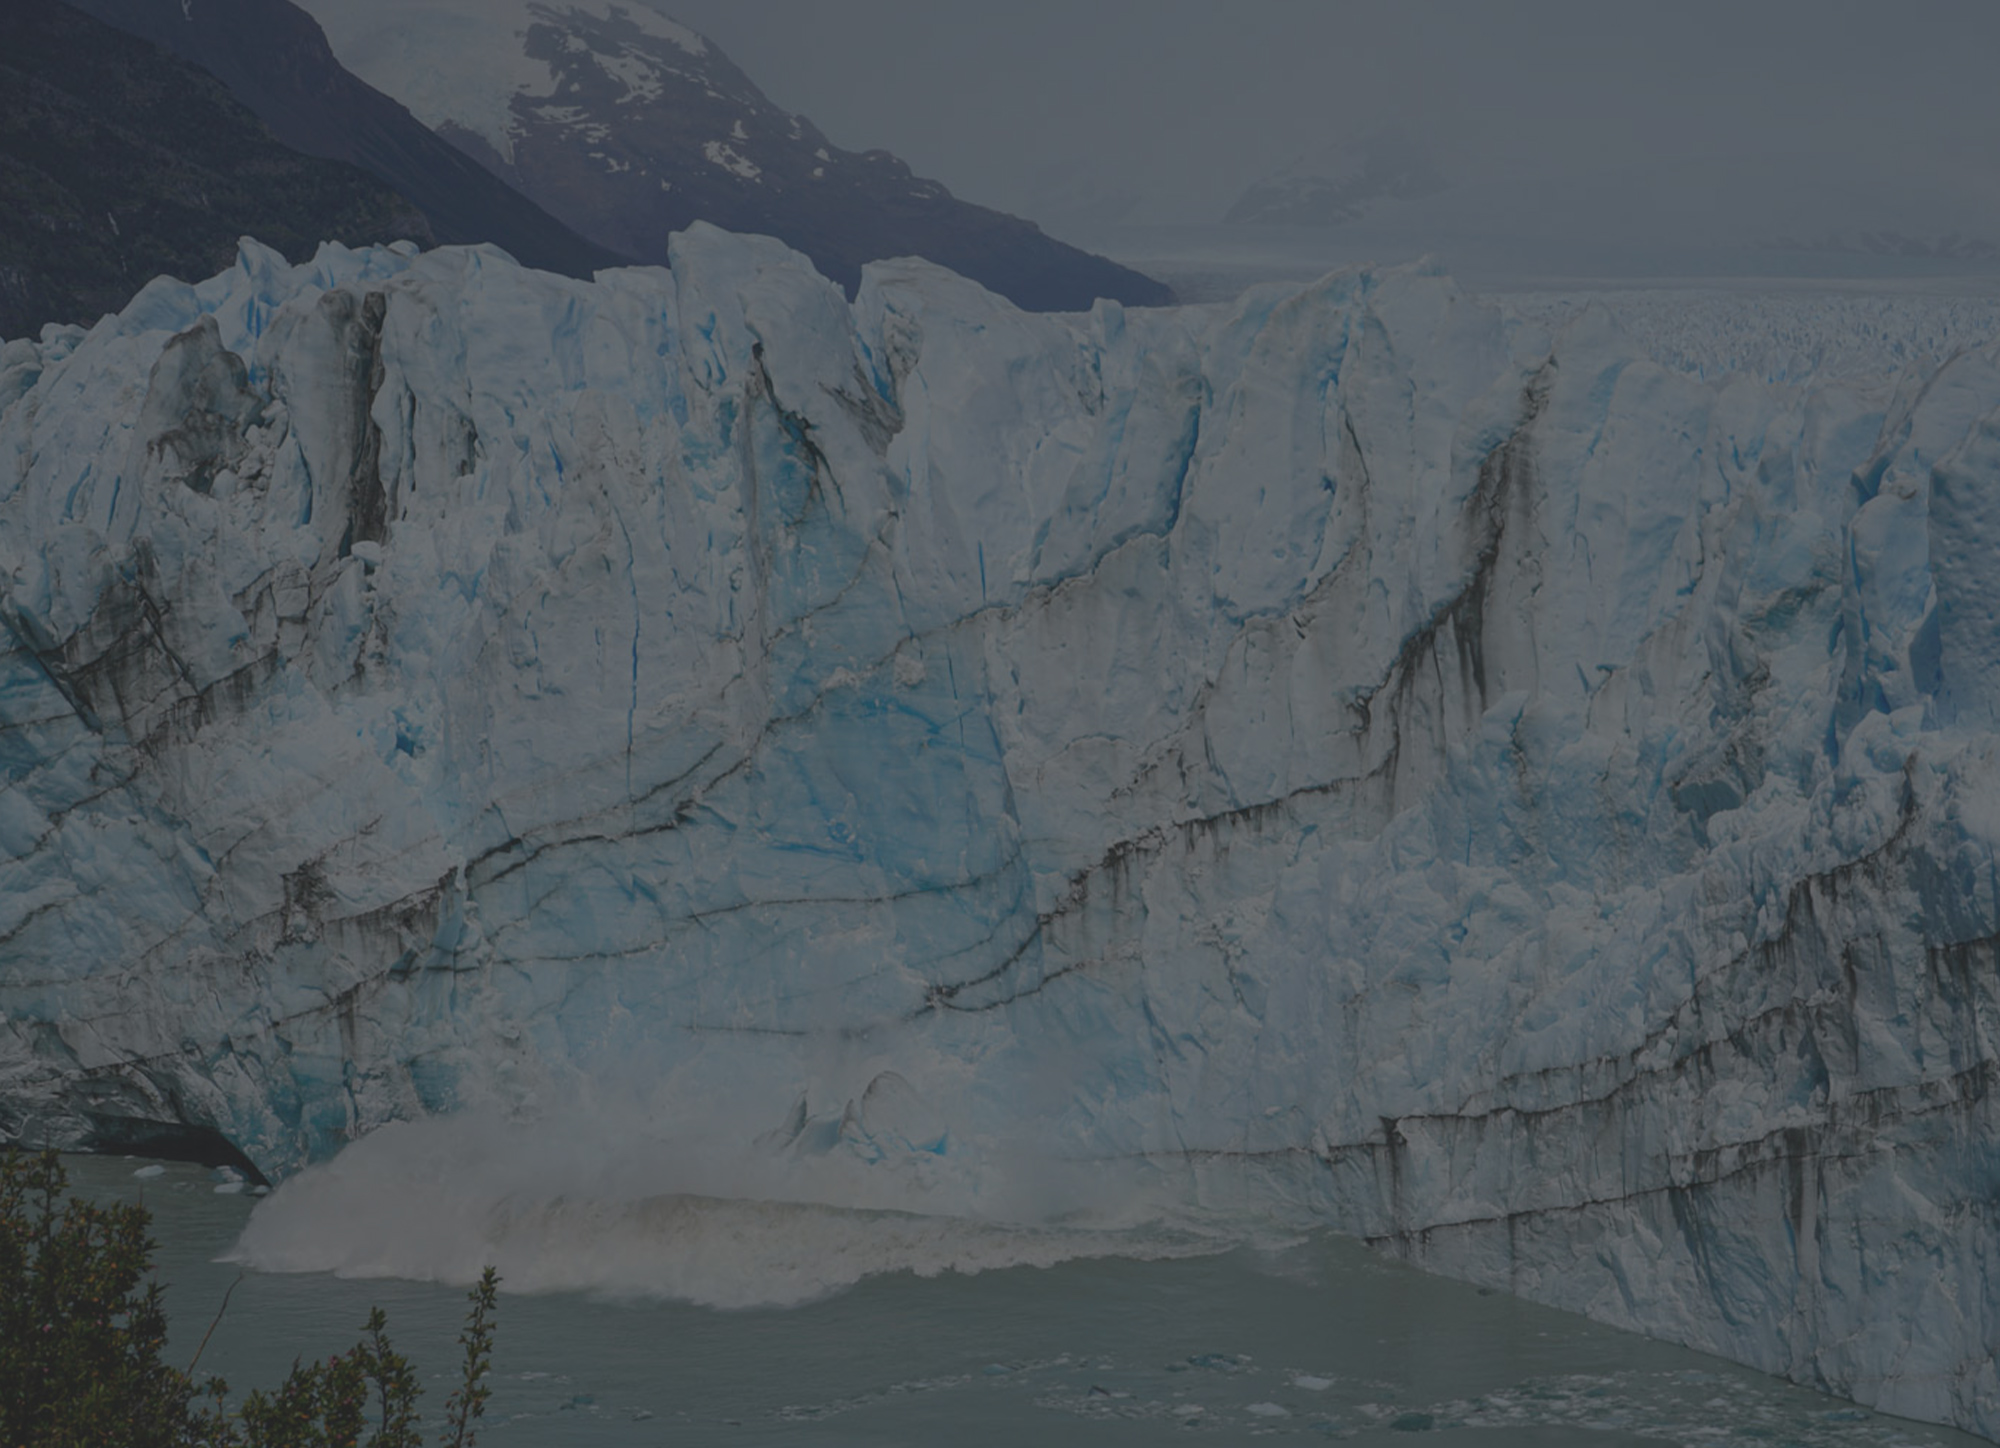 The Awe-Inspiring Perito Moreno Glacier